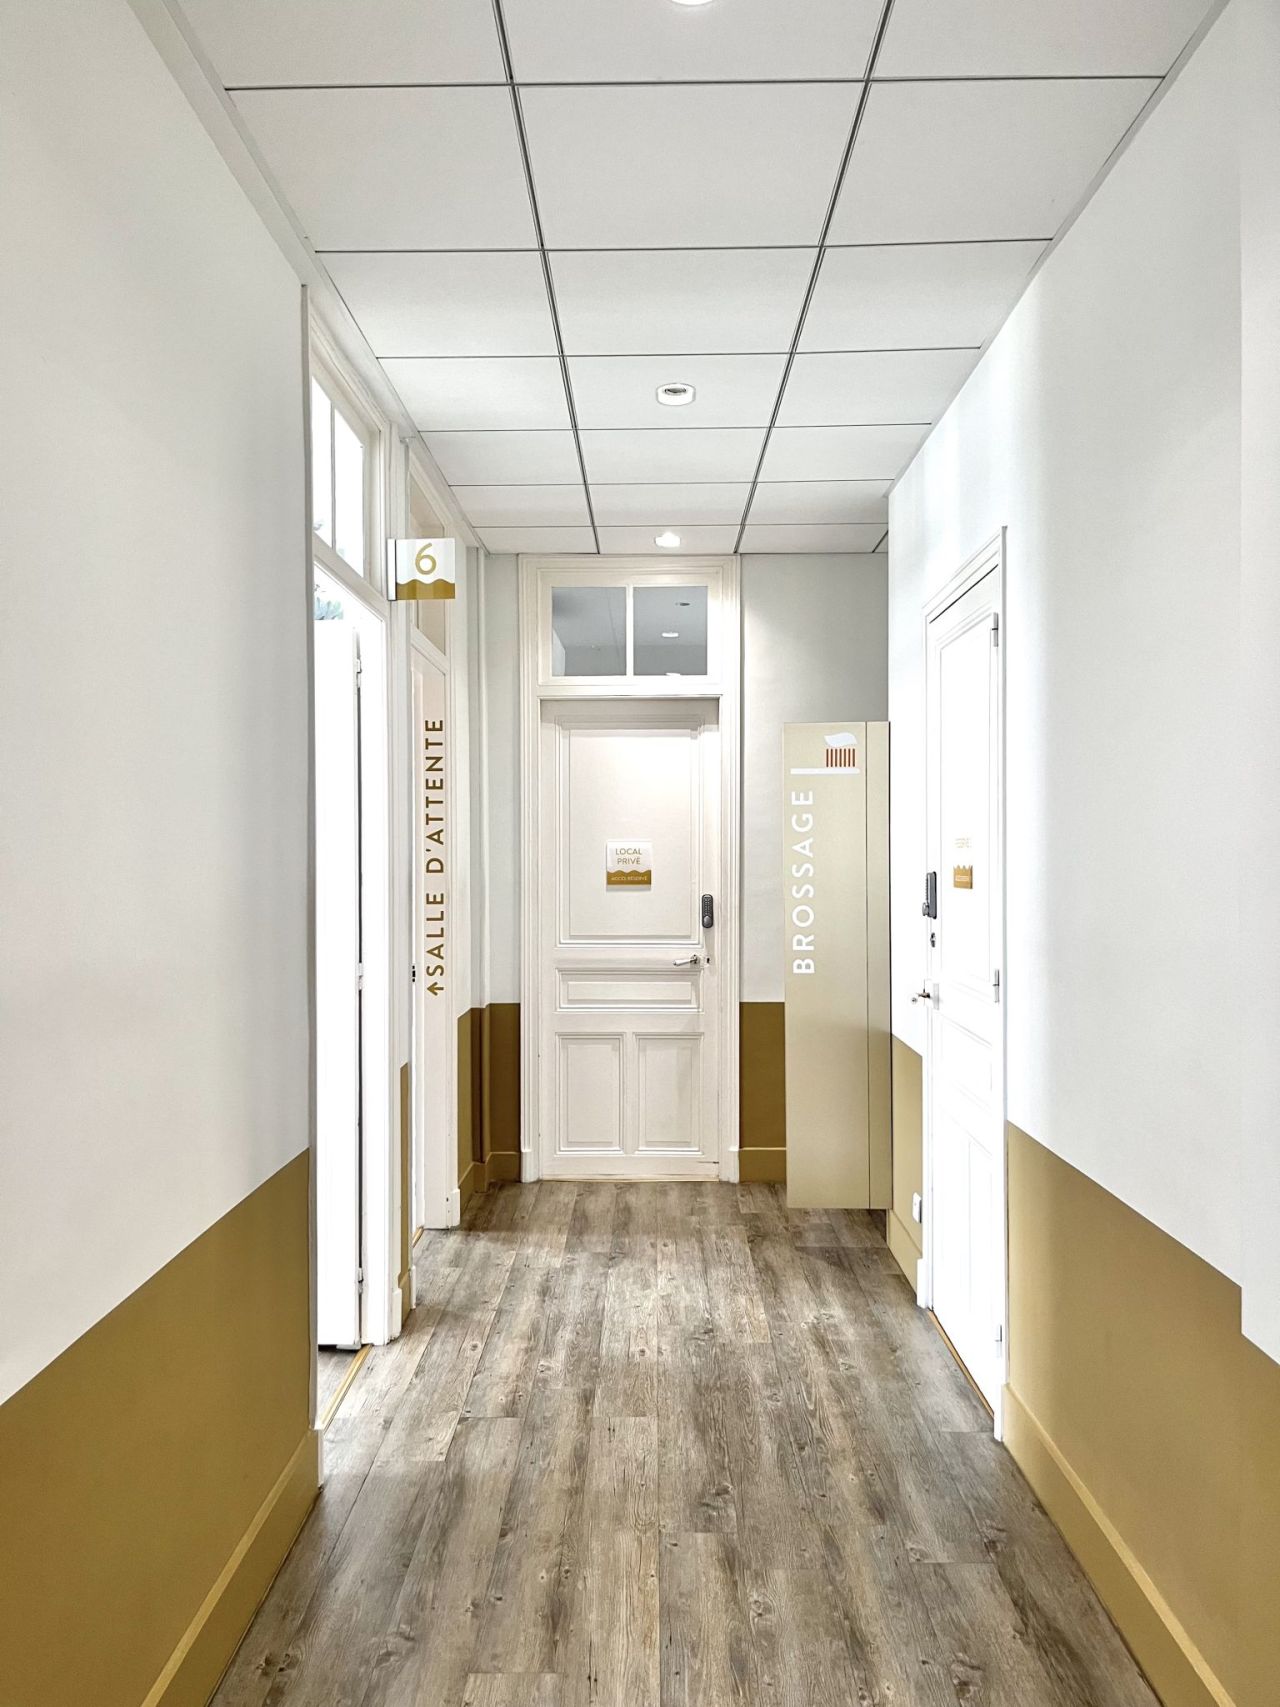 Photographie du couloir d'entrée du cabinet d'orthodontie Ortho'victoire